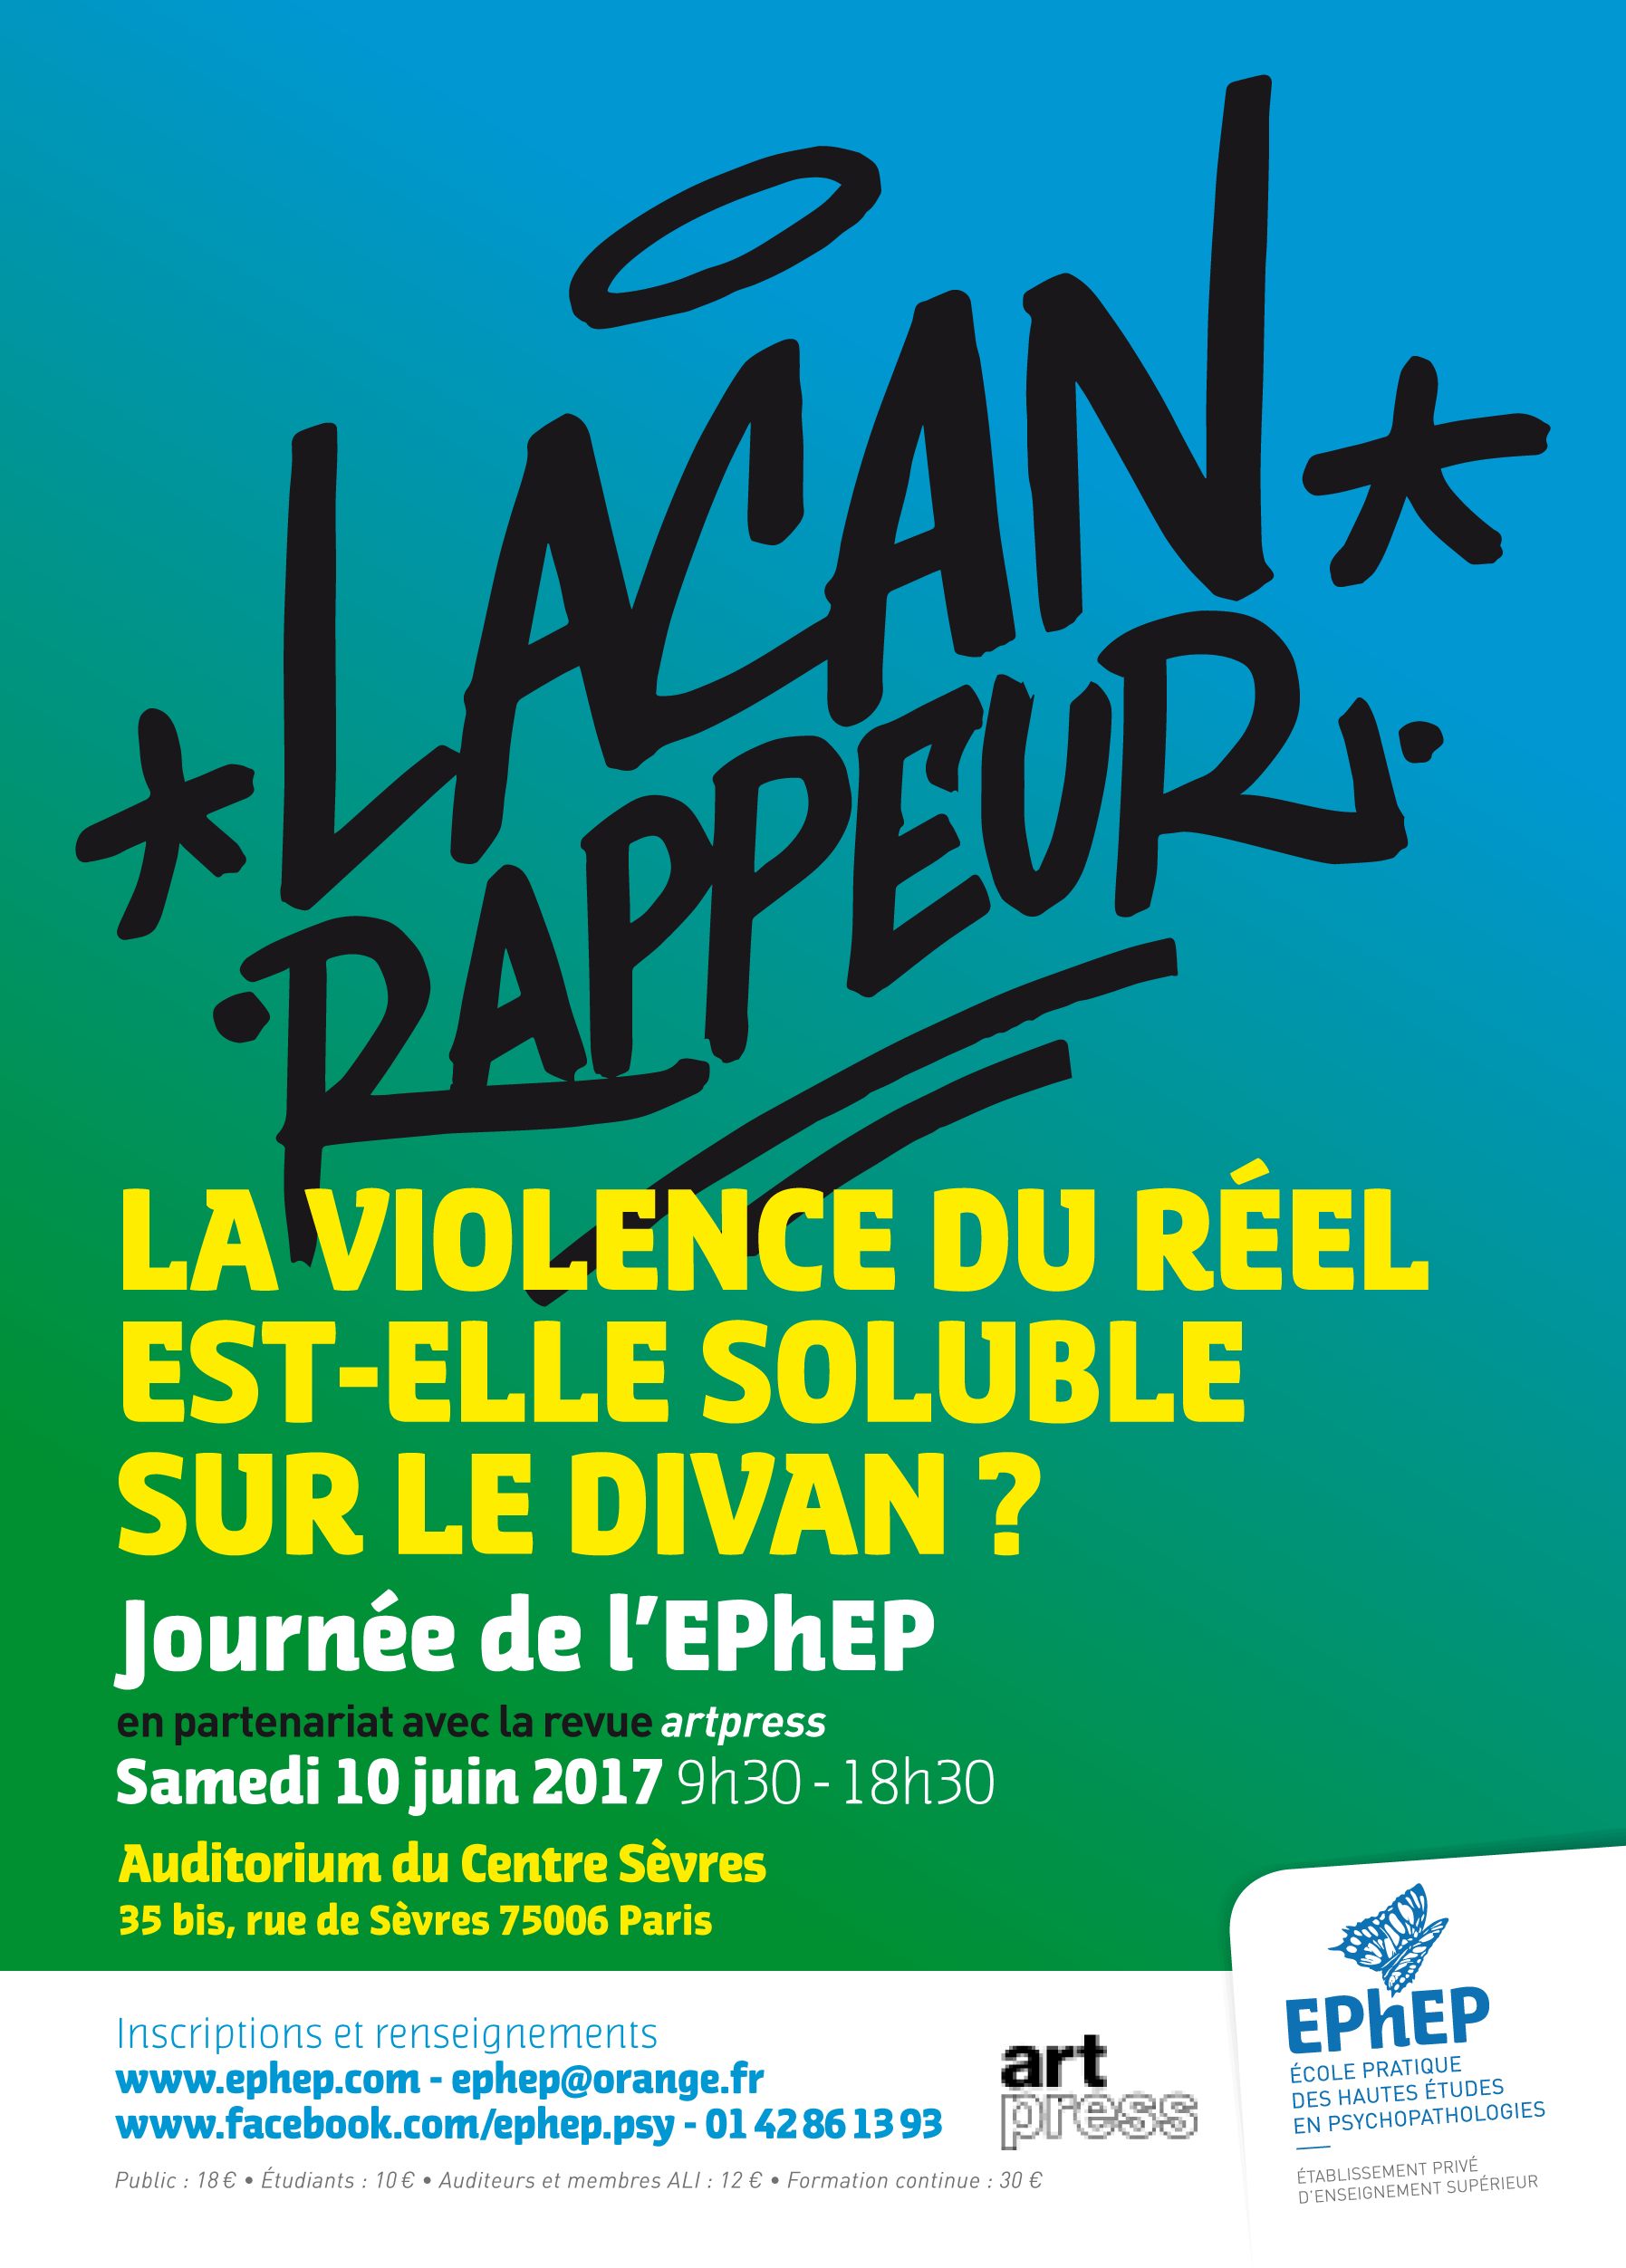 Affiche Lacan rappeur - EPhEP 2017